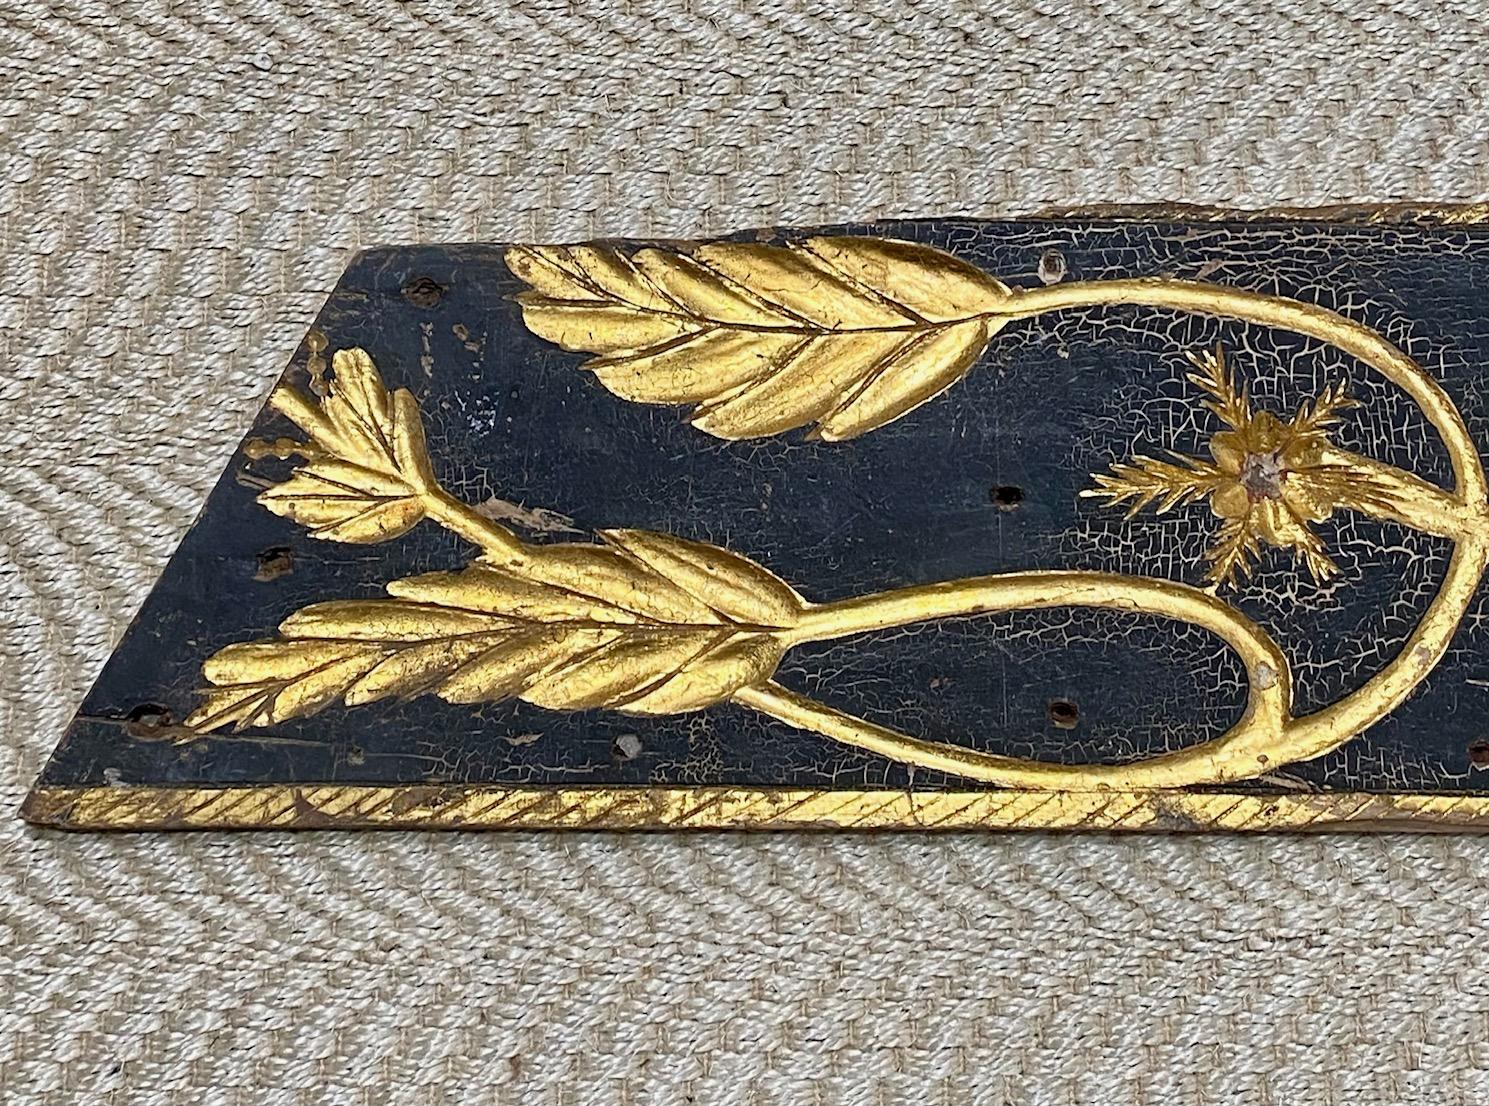 Handgeschnitzte und vergoldete Schiffstafel des 19. Jahrhunderts, zweite Hälfte des 19. Jahrhunderts, eine geschnitzte und geformte Tafel, die nach oben gebogen ist und sich zur Spitze hin verjüngt, mit eingeschnittenen oder versenkten, reliefartig